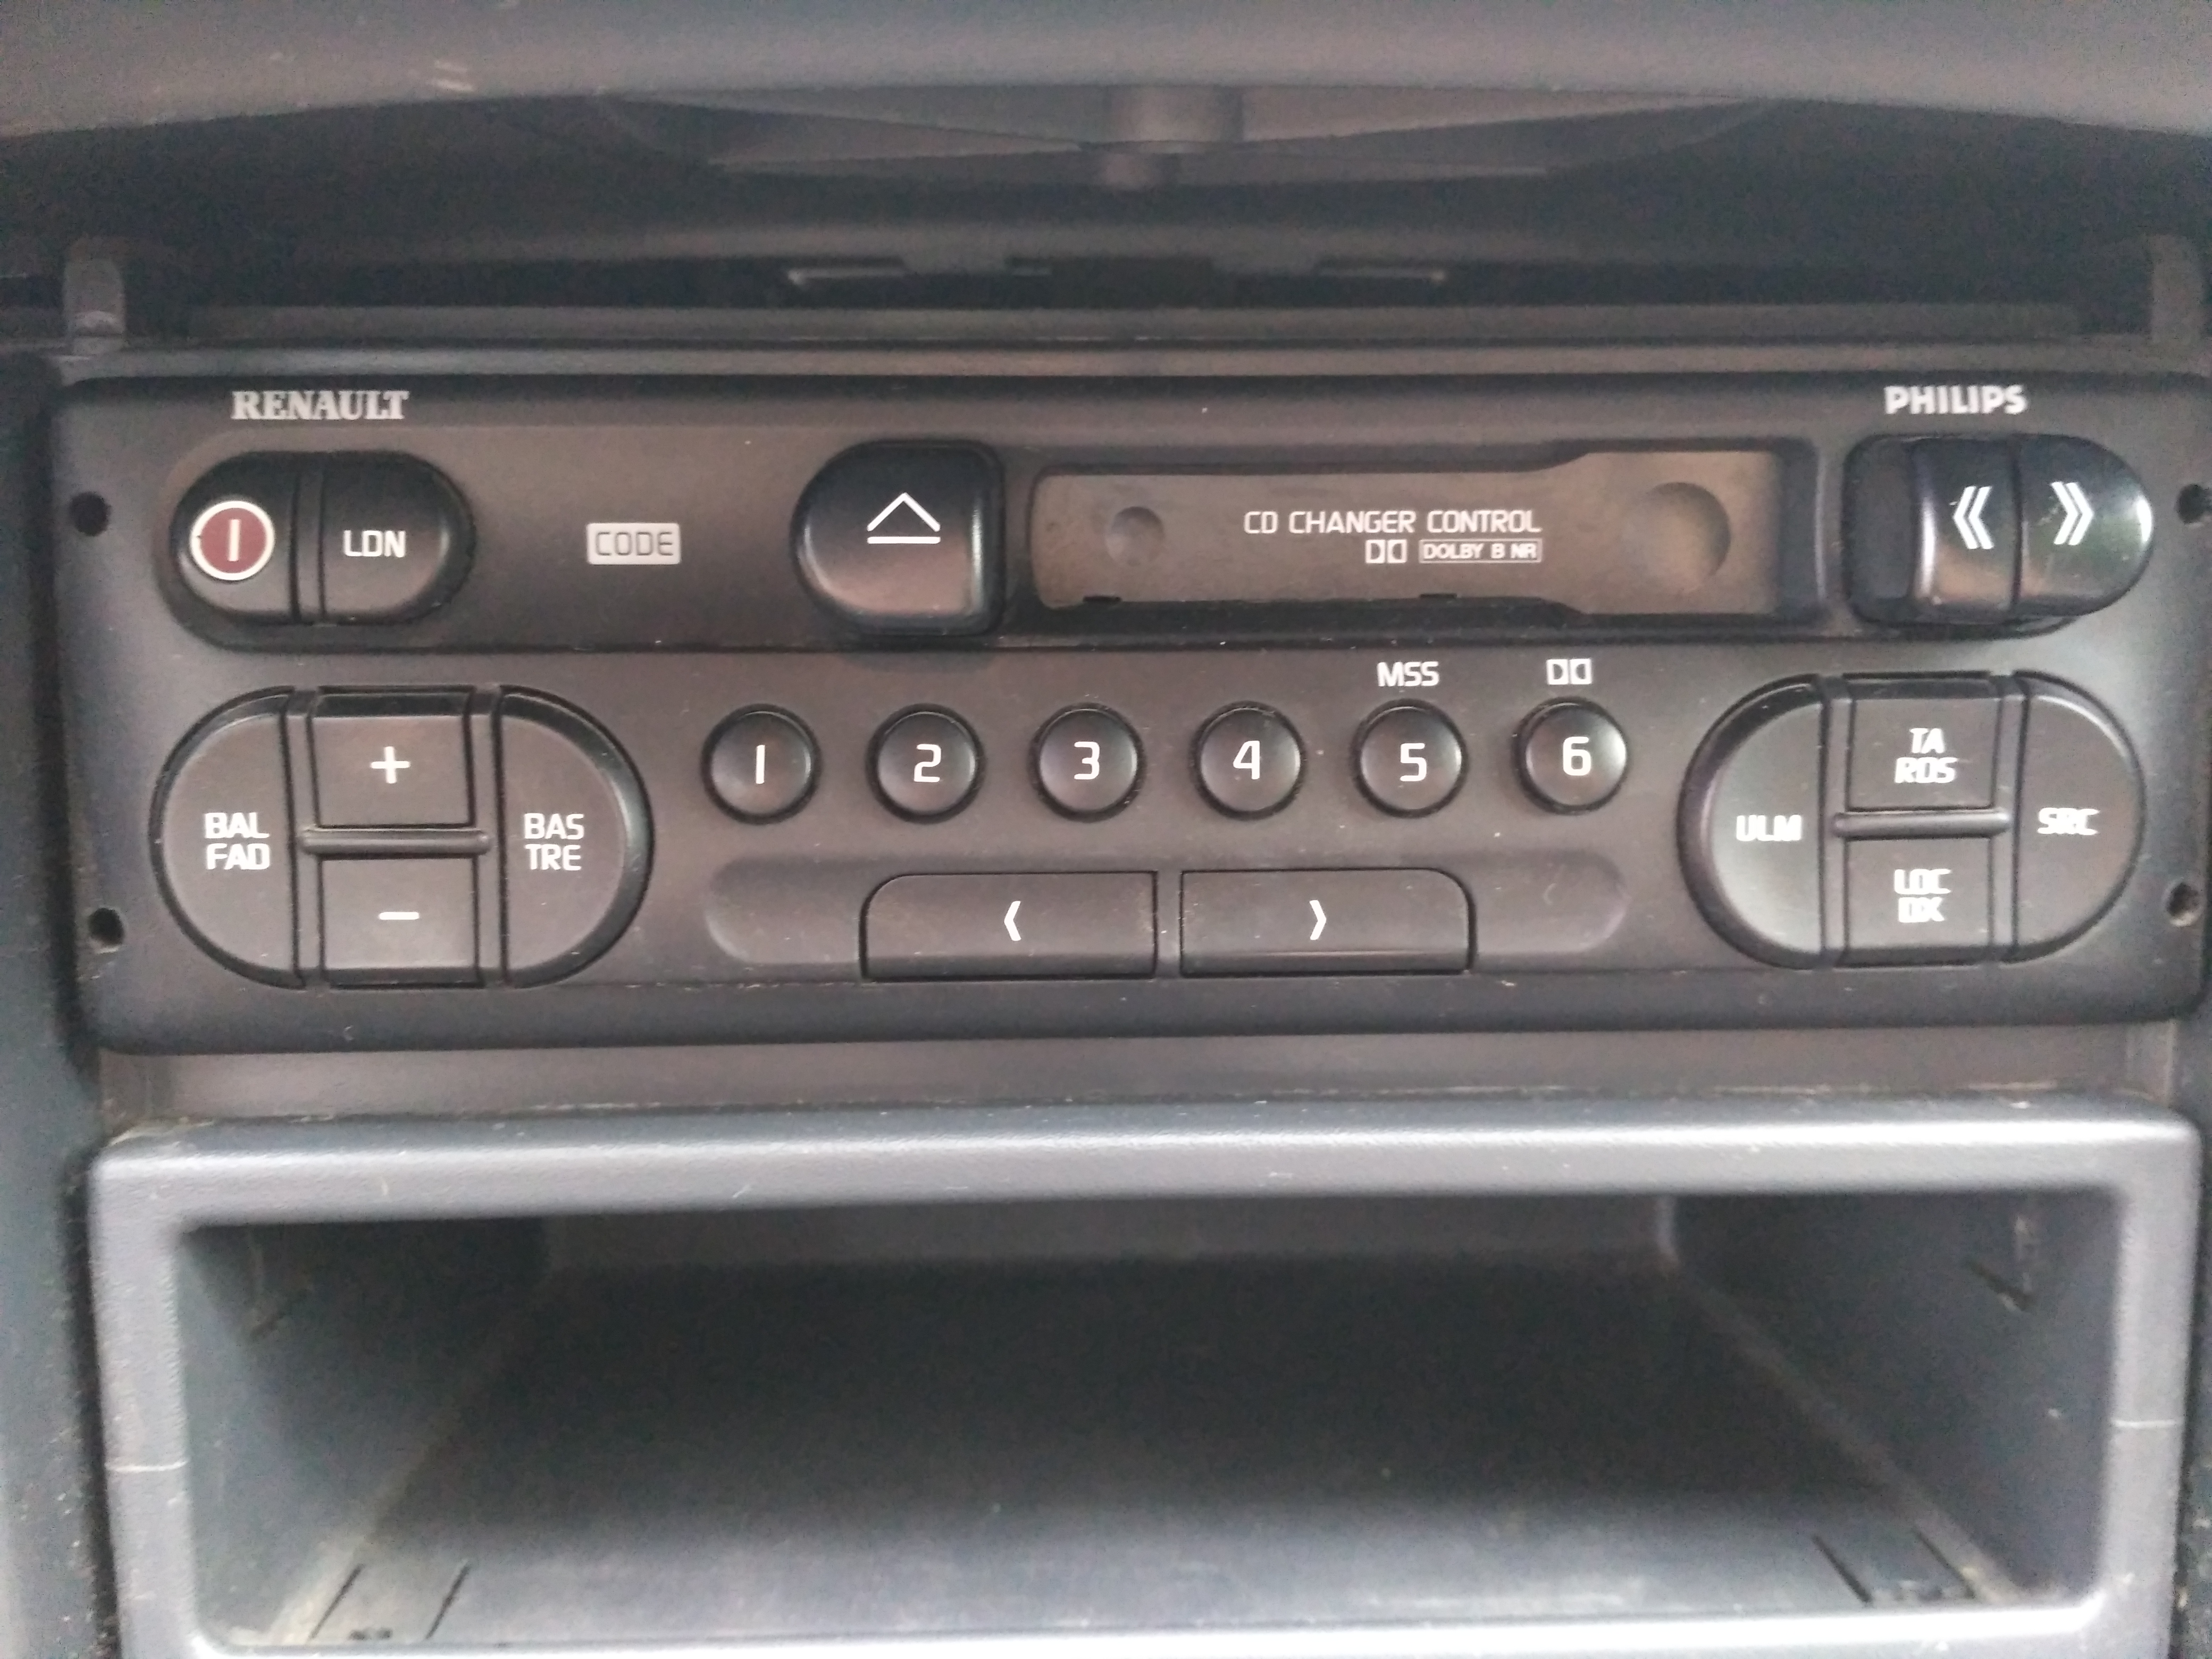 Podłączenie kabla AUX do radia Philips w Renault Laguna I